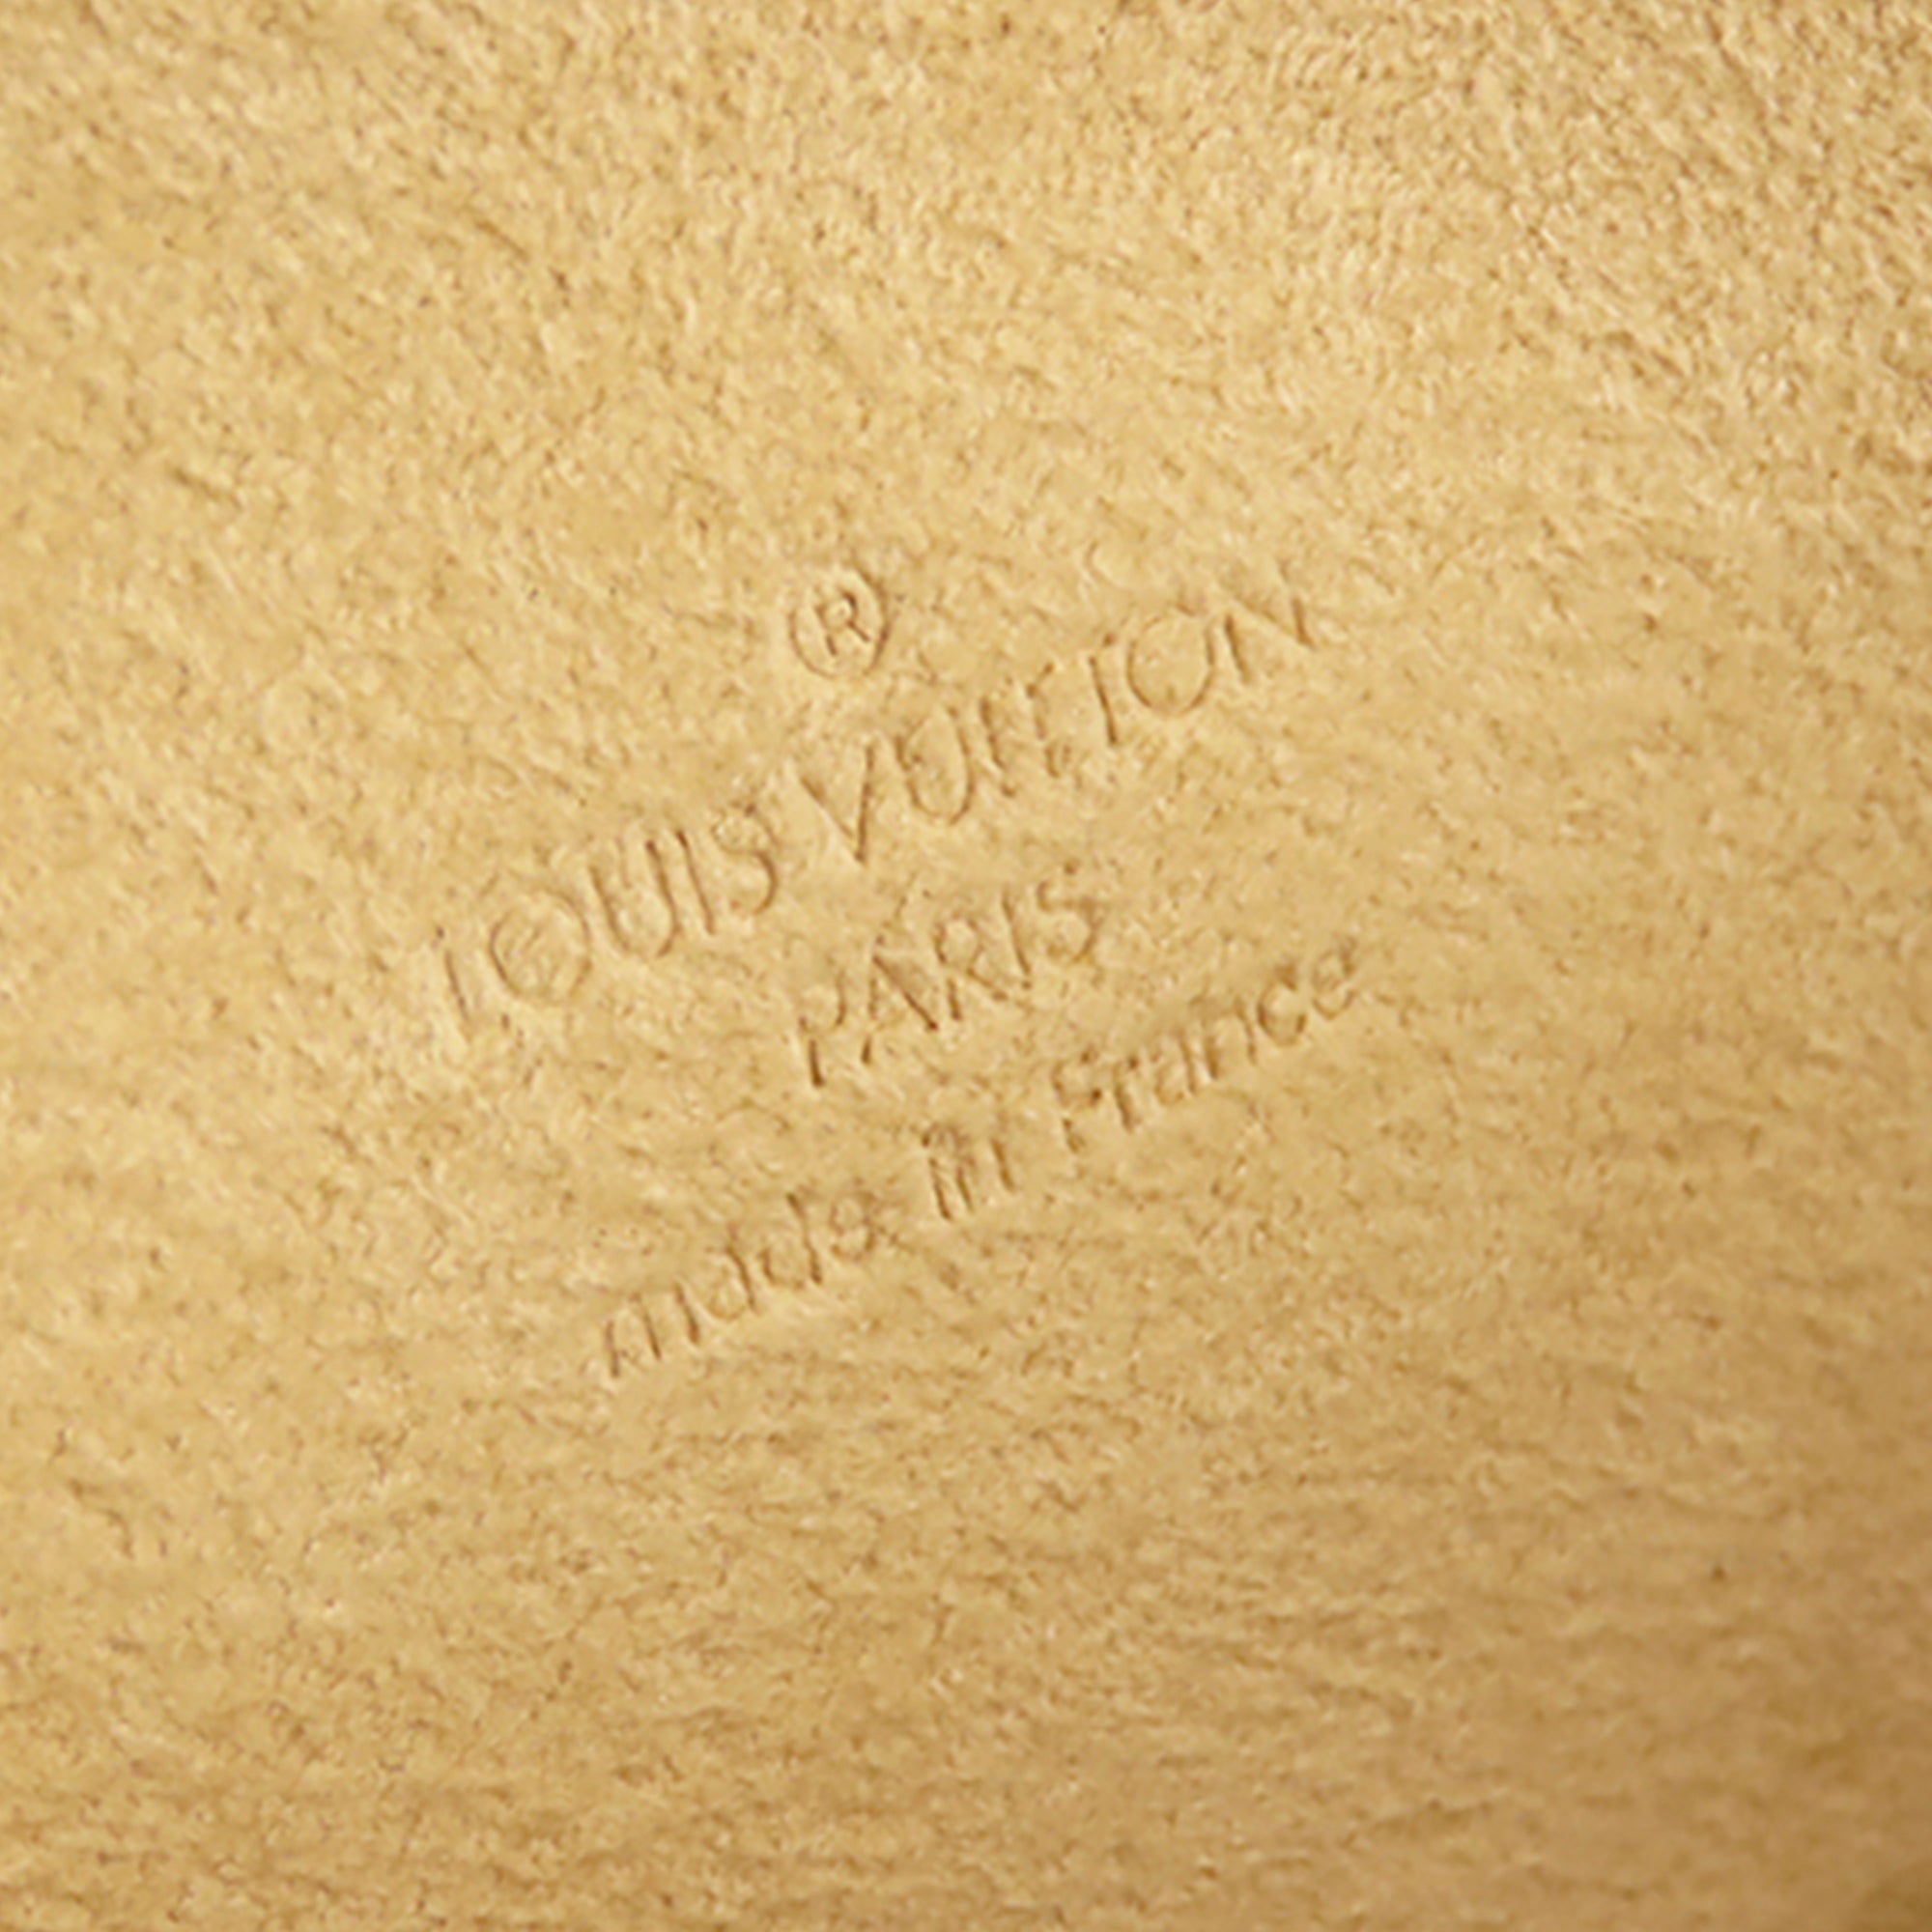 Louis Vuitton Monogram Canvas Pochette Solo Belt Bag QJA0UINW0B000